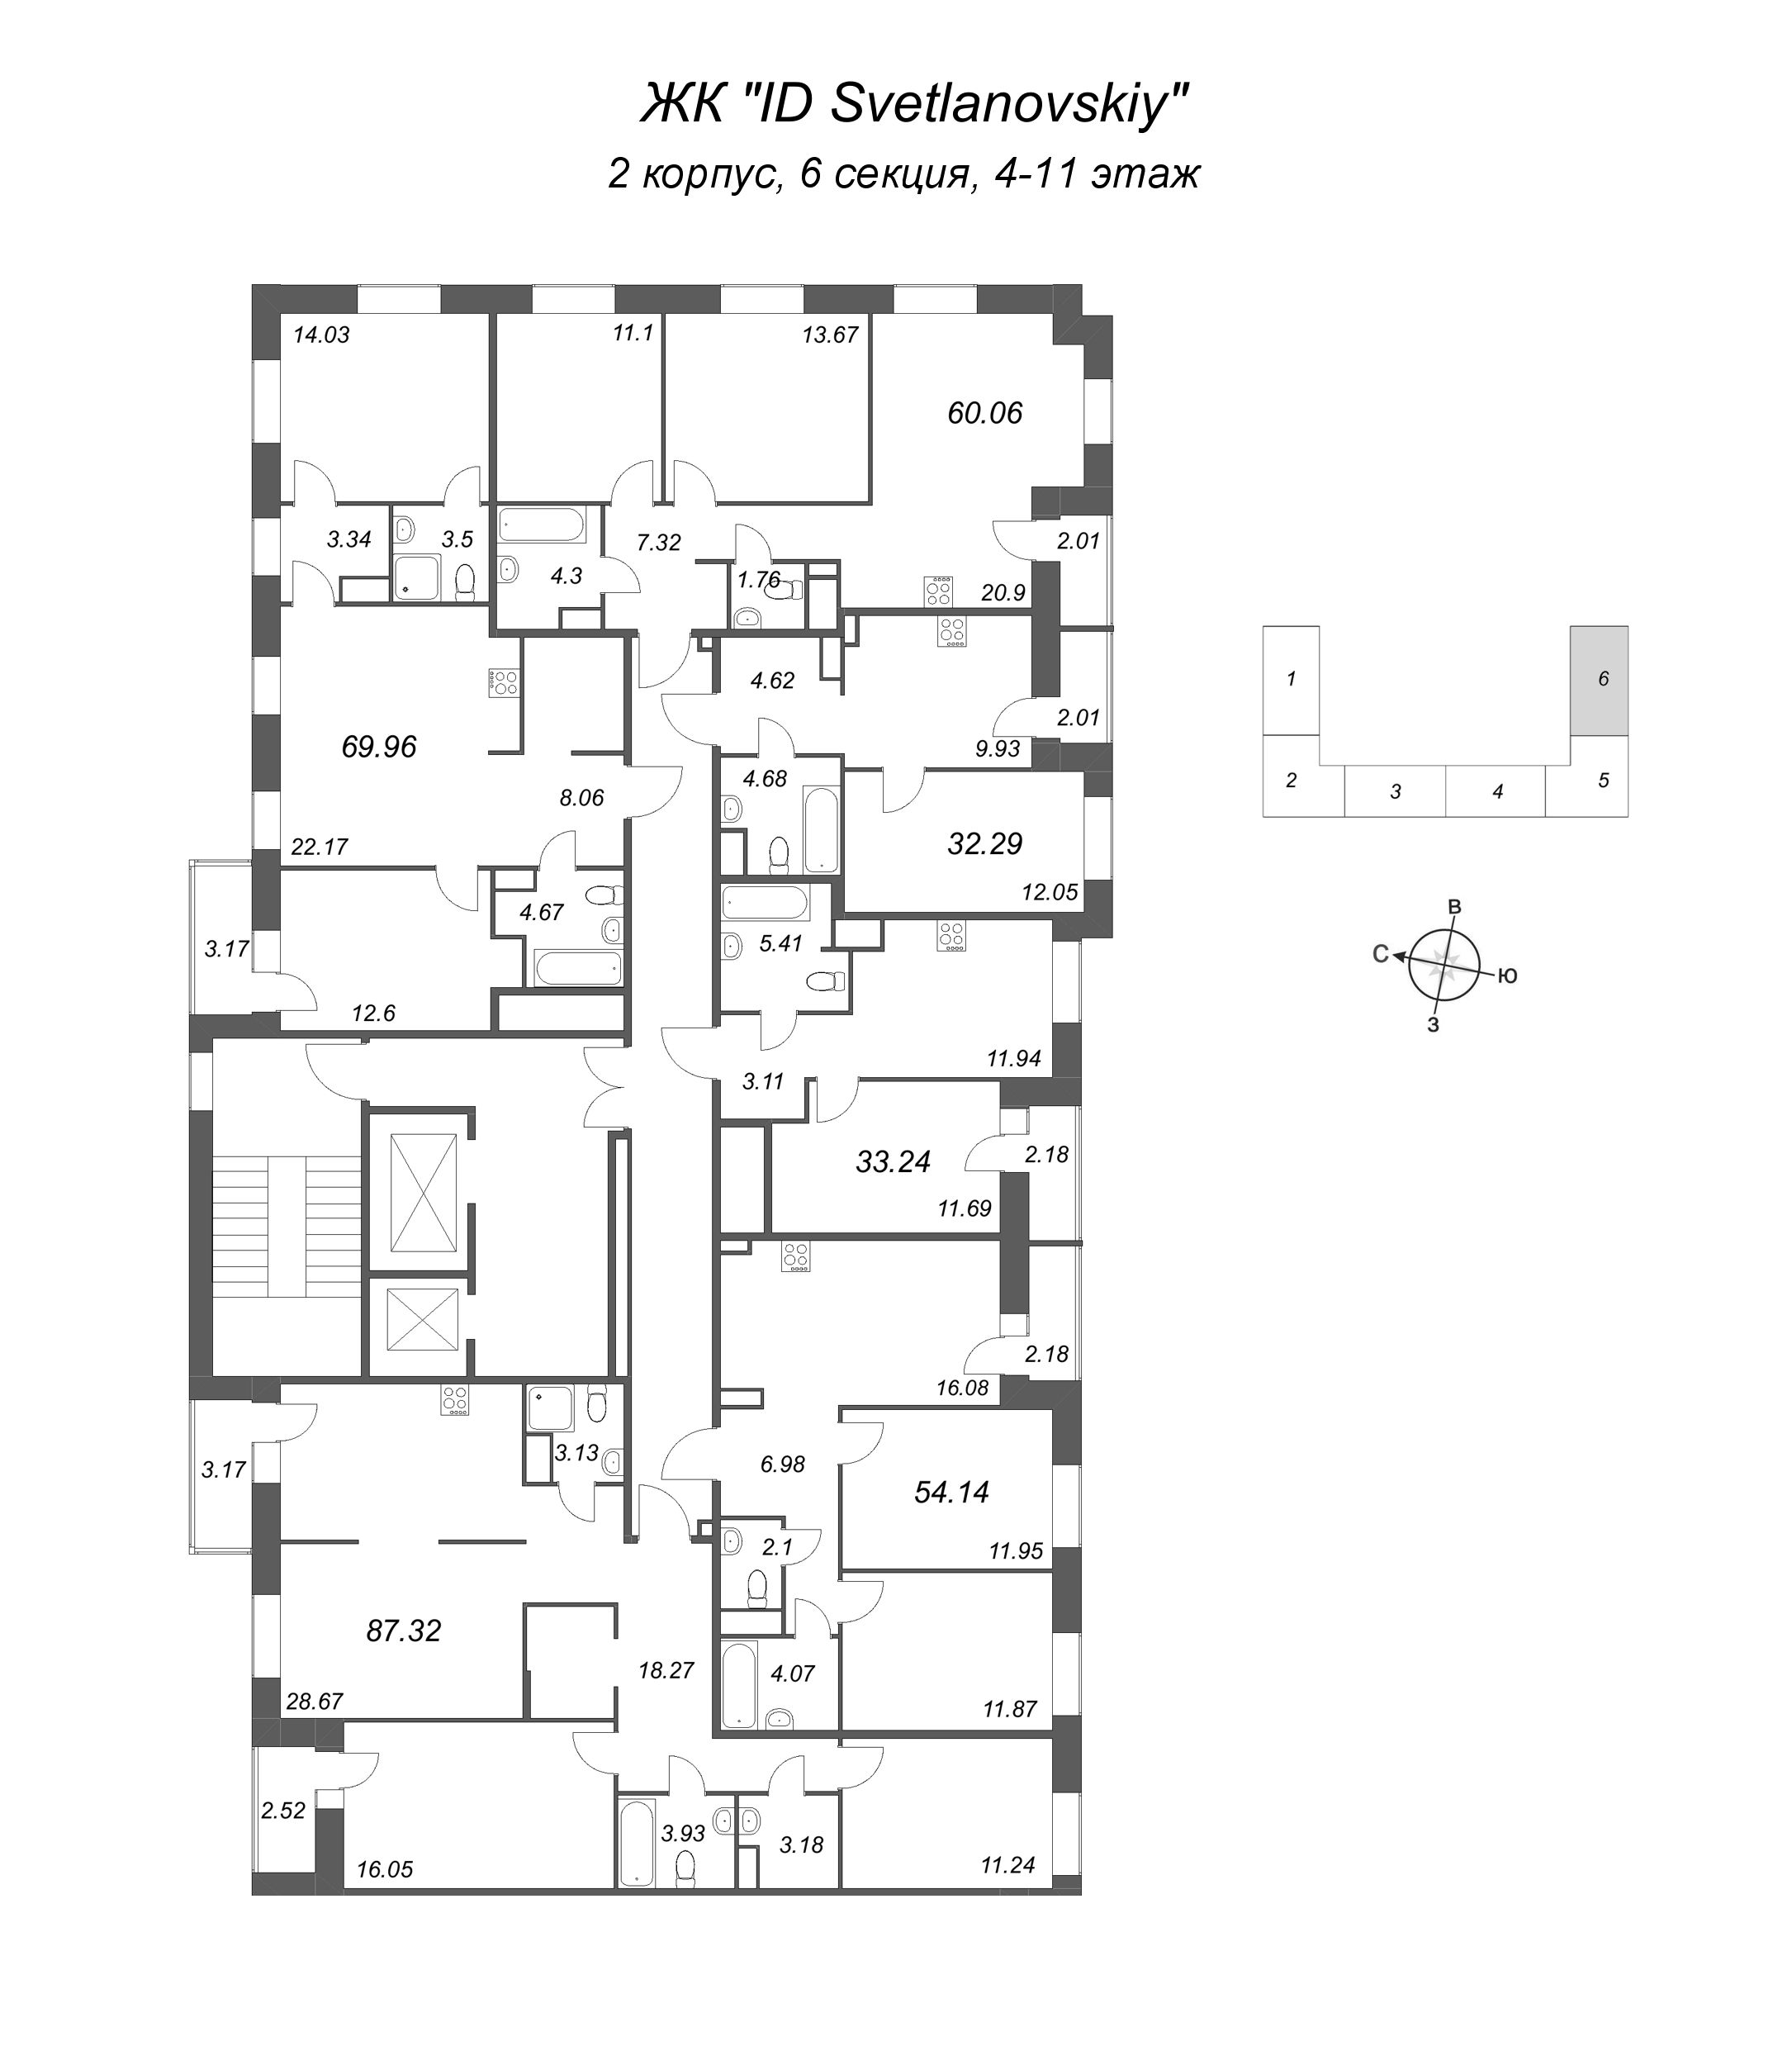 3-комнатная (Евро) квартира, 60.06 м² в ЖК "ID Svetlanovskiy" - планировка этажа